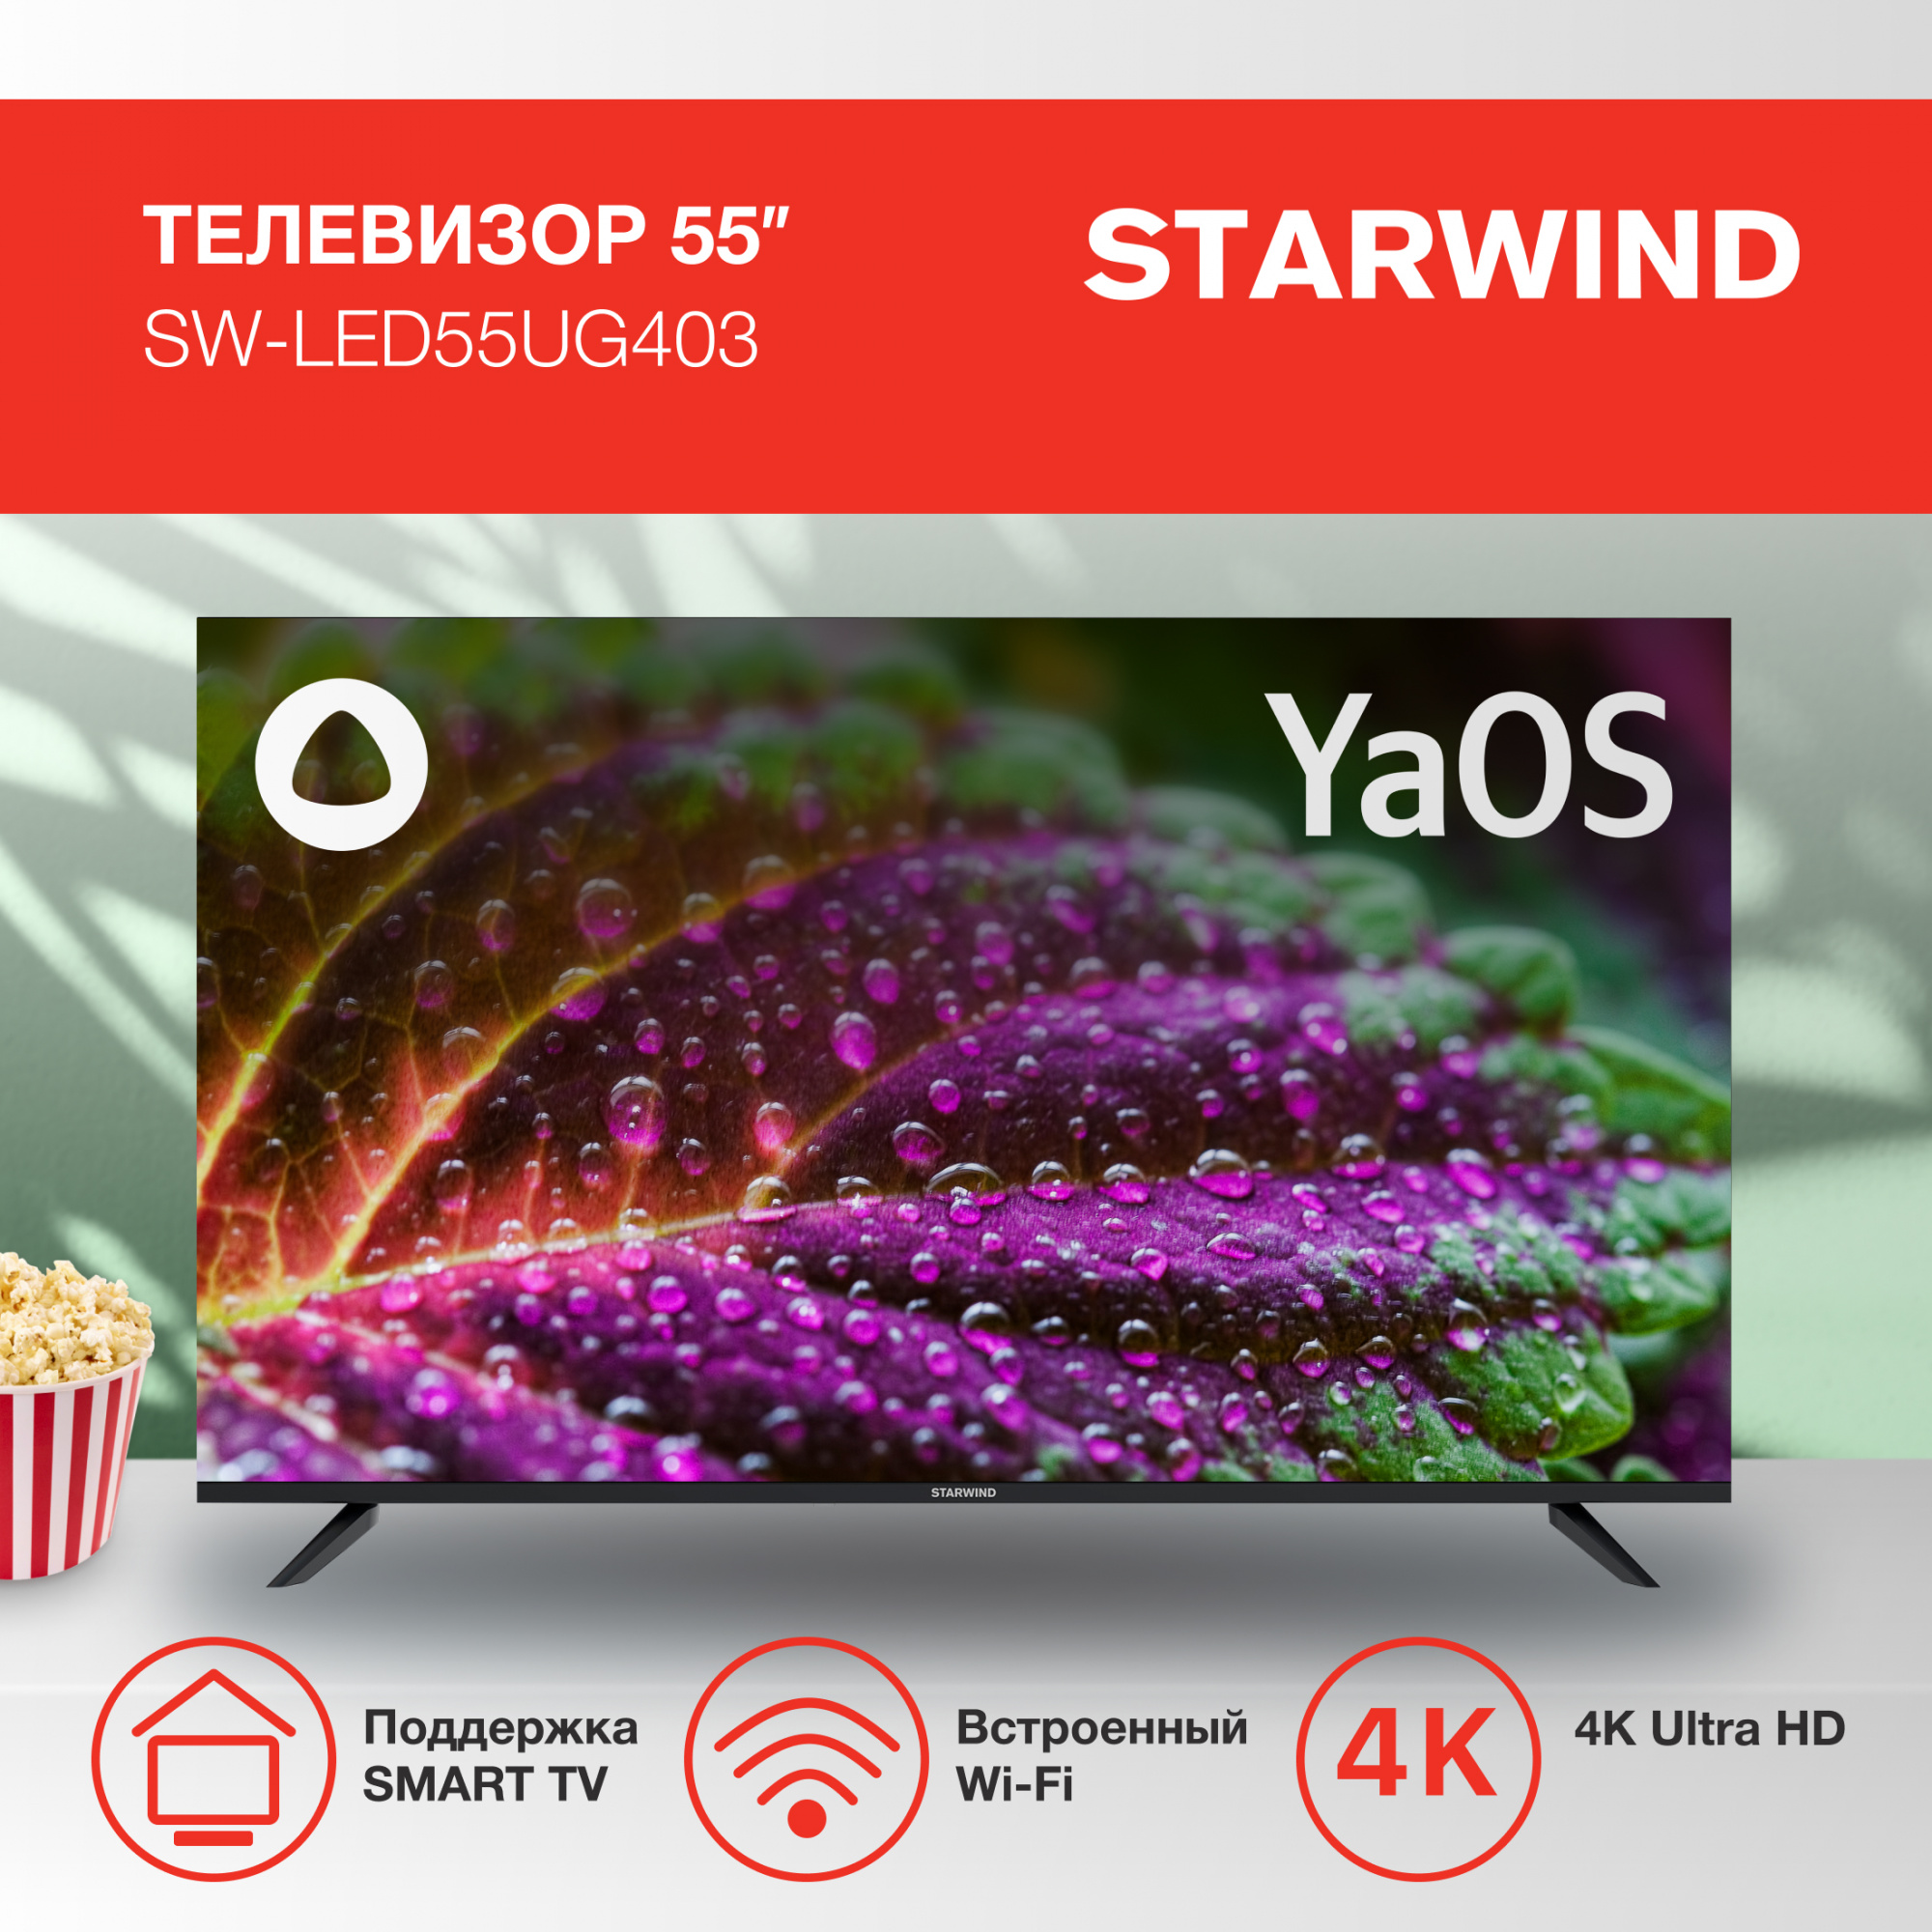 Телевизор Starwind Яндекс.ТВ SW-LED55UG403, 55", LED, 4K Ultra HD, Яндекс.ТВ, черный от магазина Старвинд